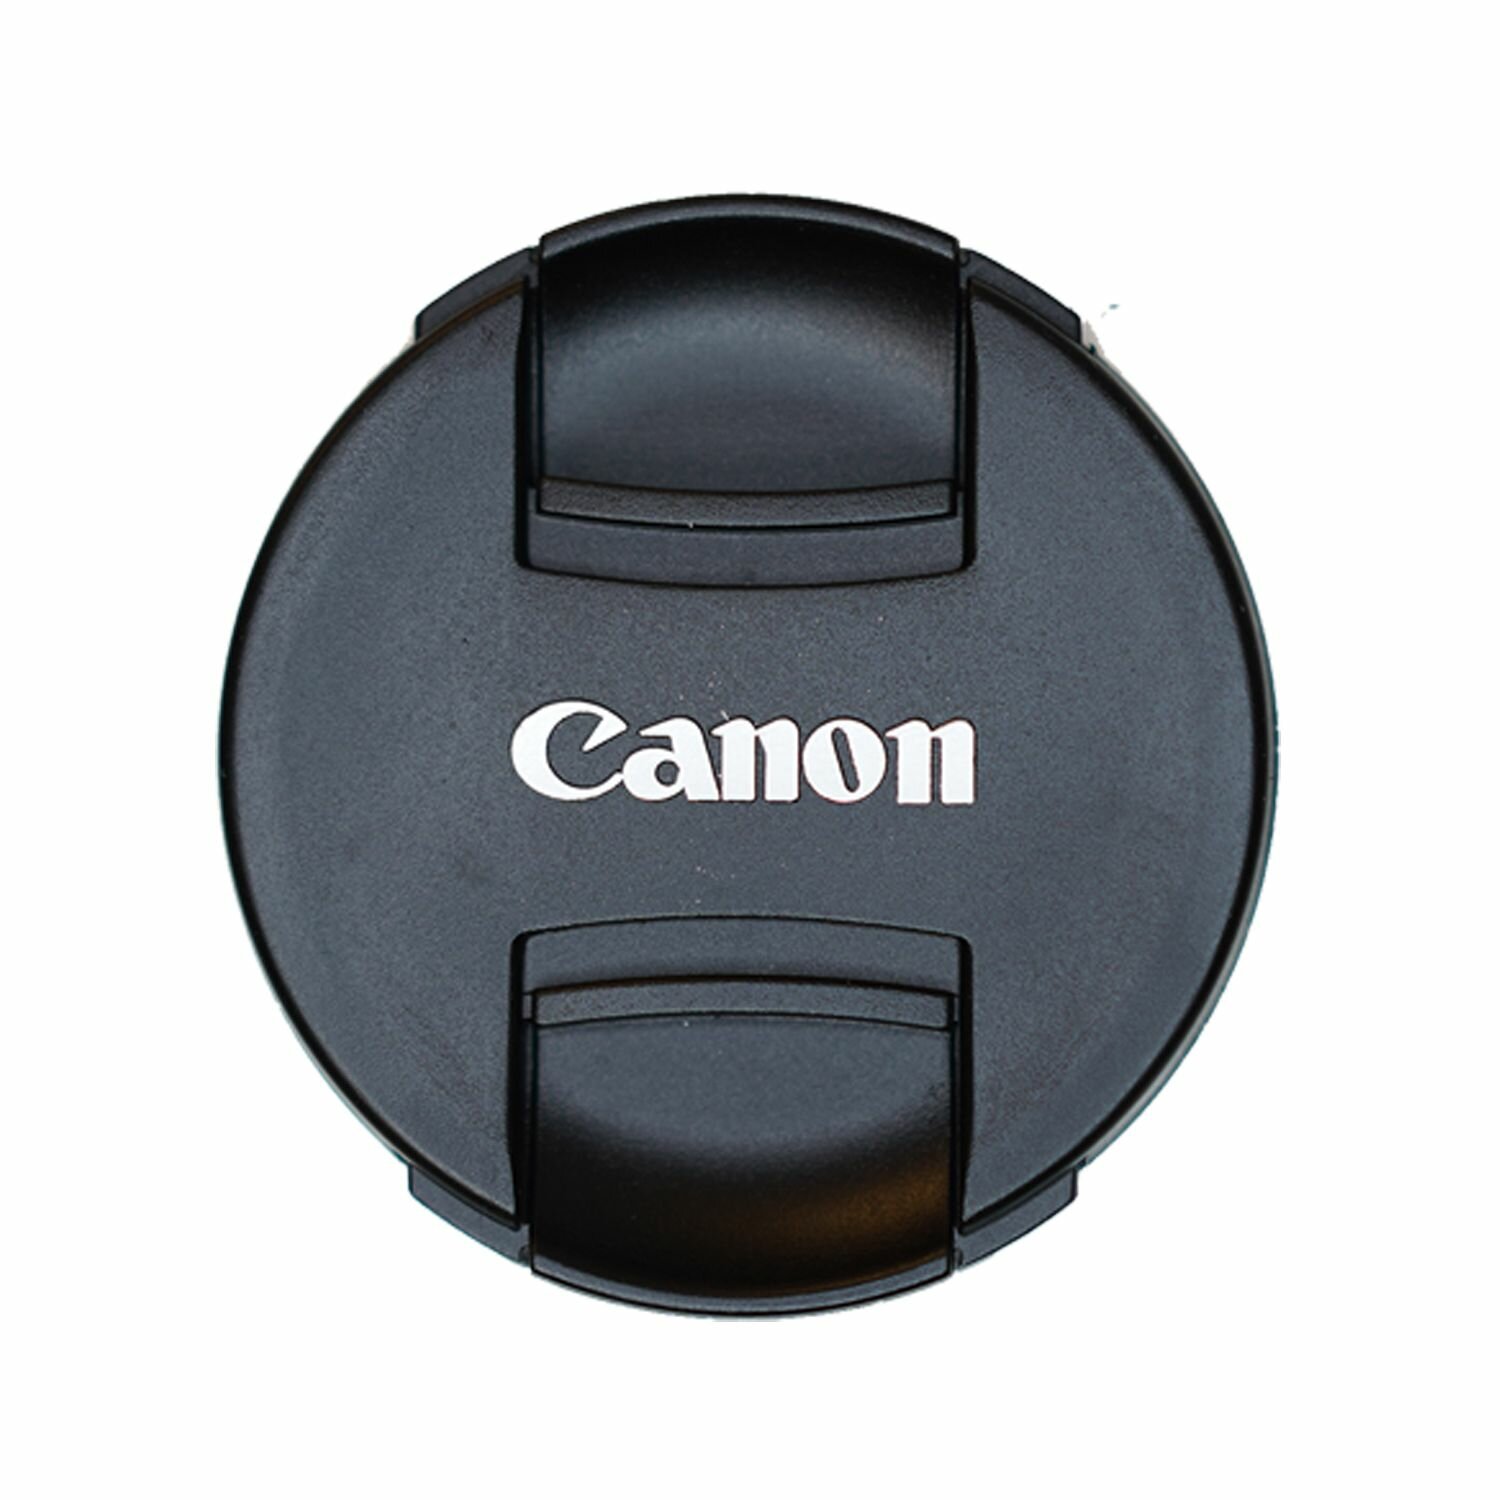 Защитная крышка 77 мм для объектива с надписью "Canon"